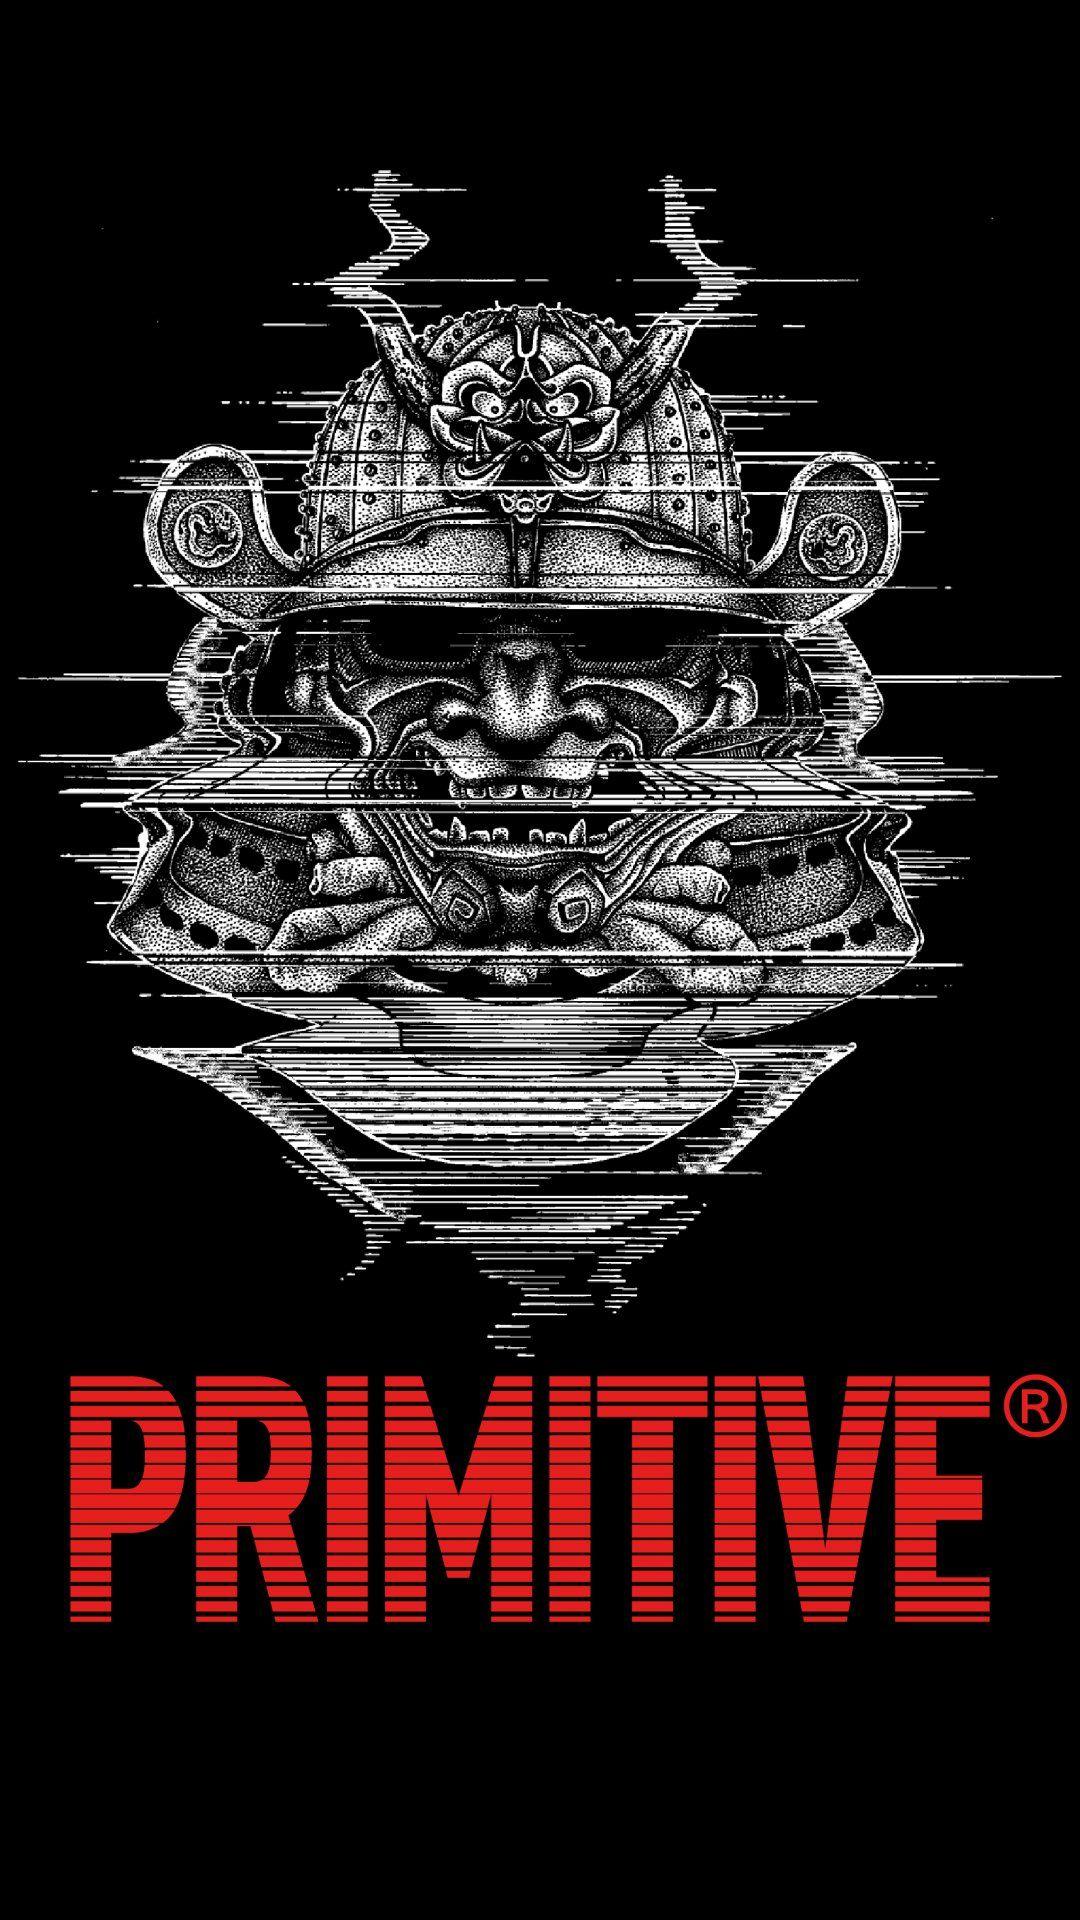 Primitive Rose Logo - Wallpapers - Primitive Skateboarding